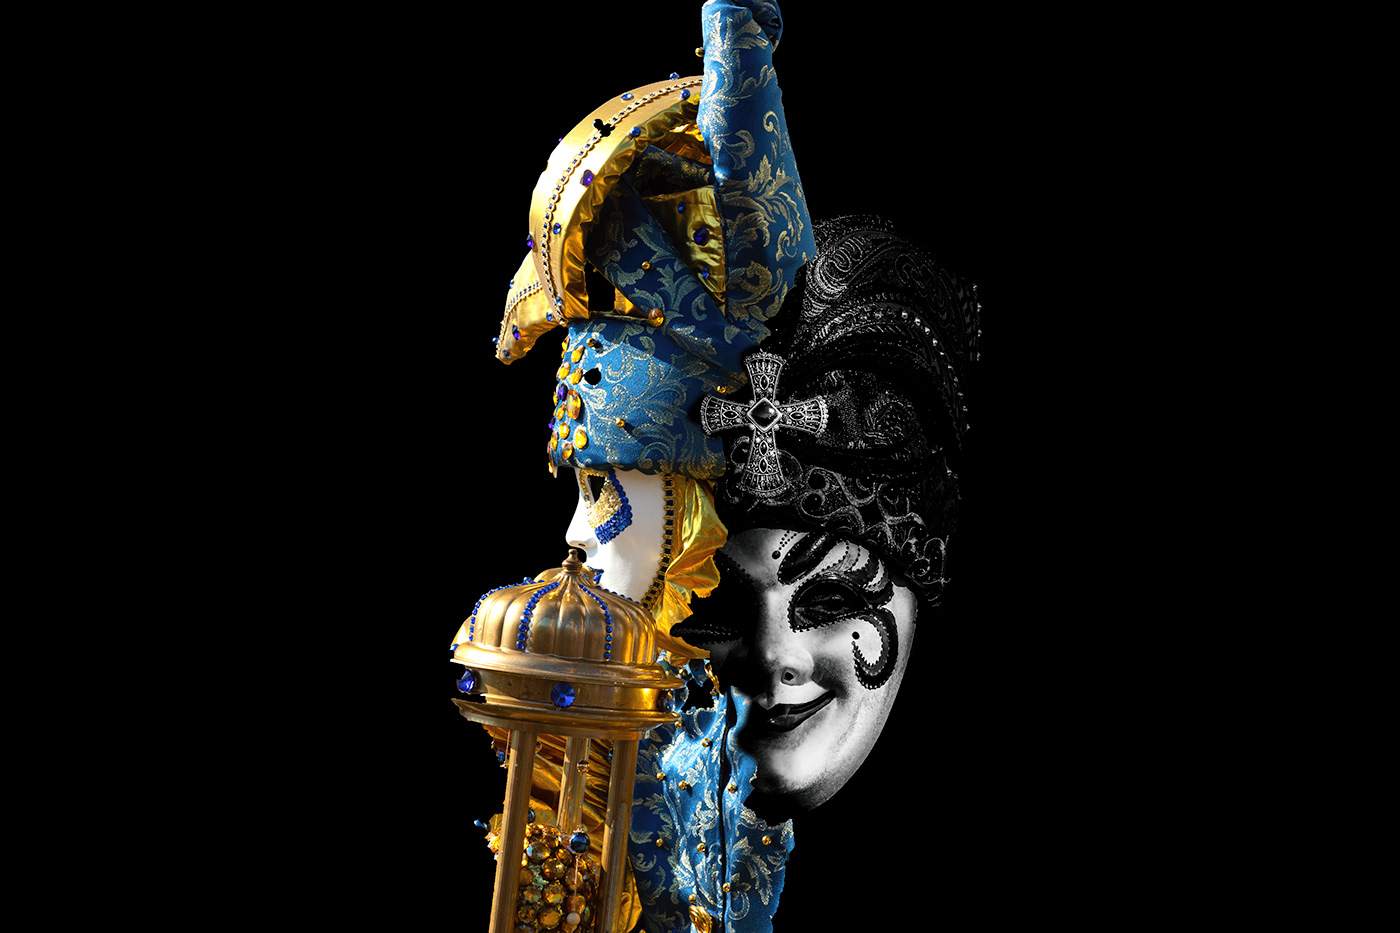 jester masks photographers Photography  Pierrot politics Renaissance Shane Aurousseau travel photographers Venice